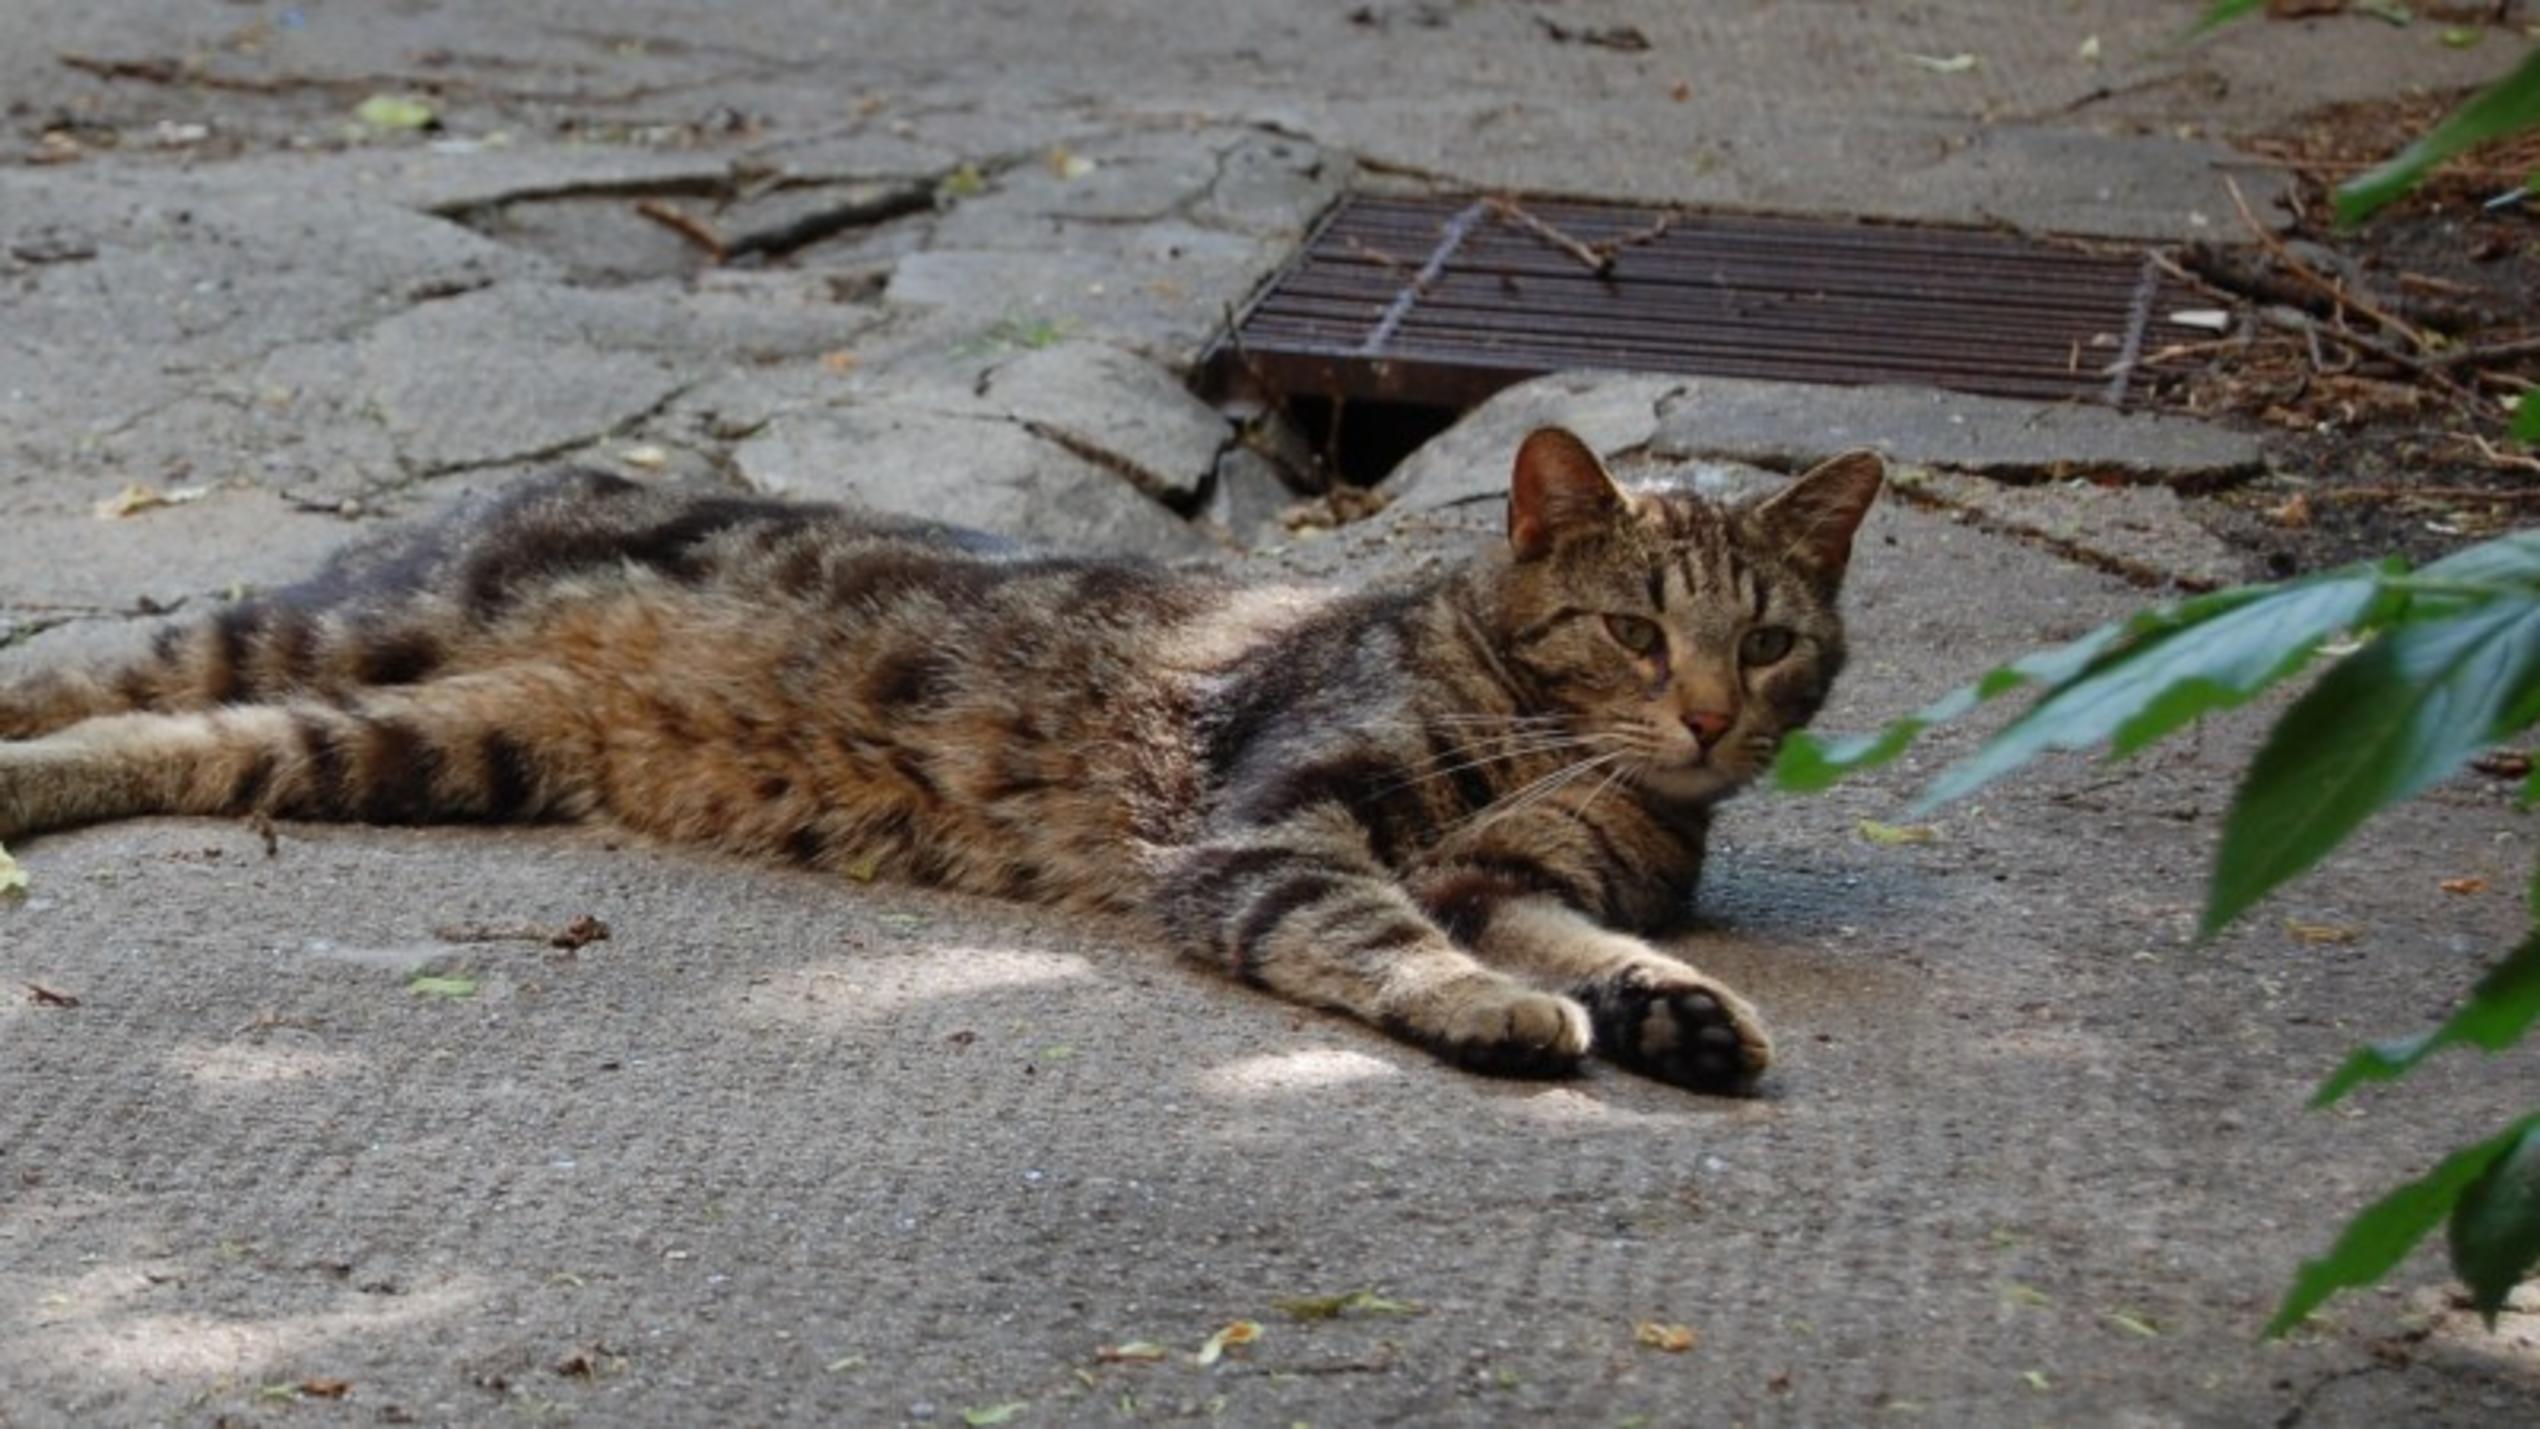 Projekt Kitty. Eine neue Chance zur Verbesserung der Situation von Straßenkatzen.